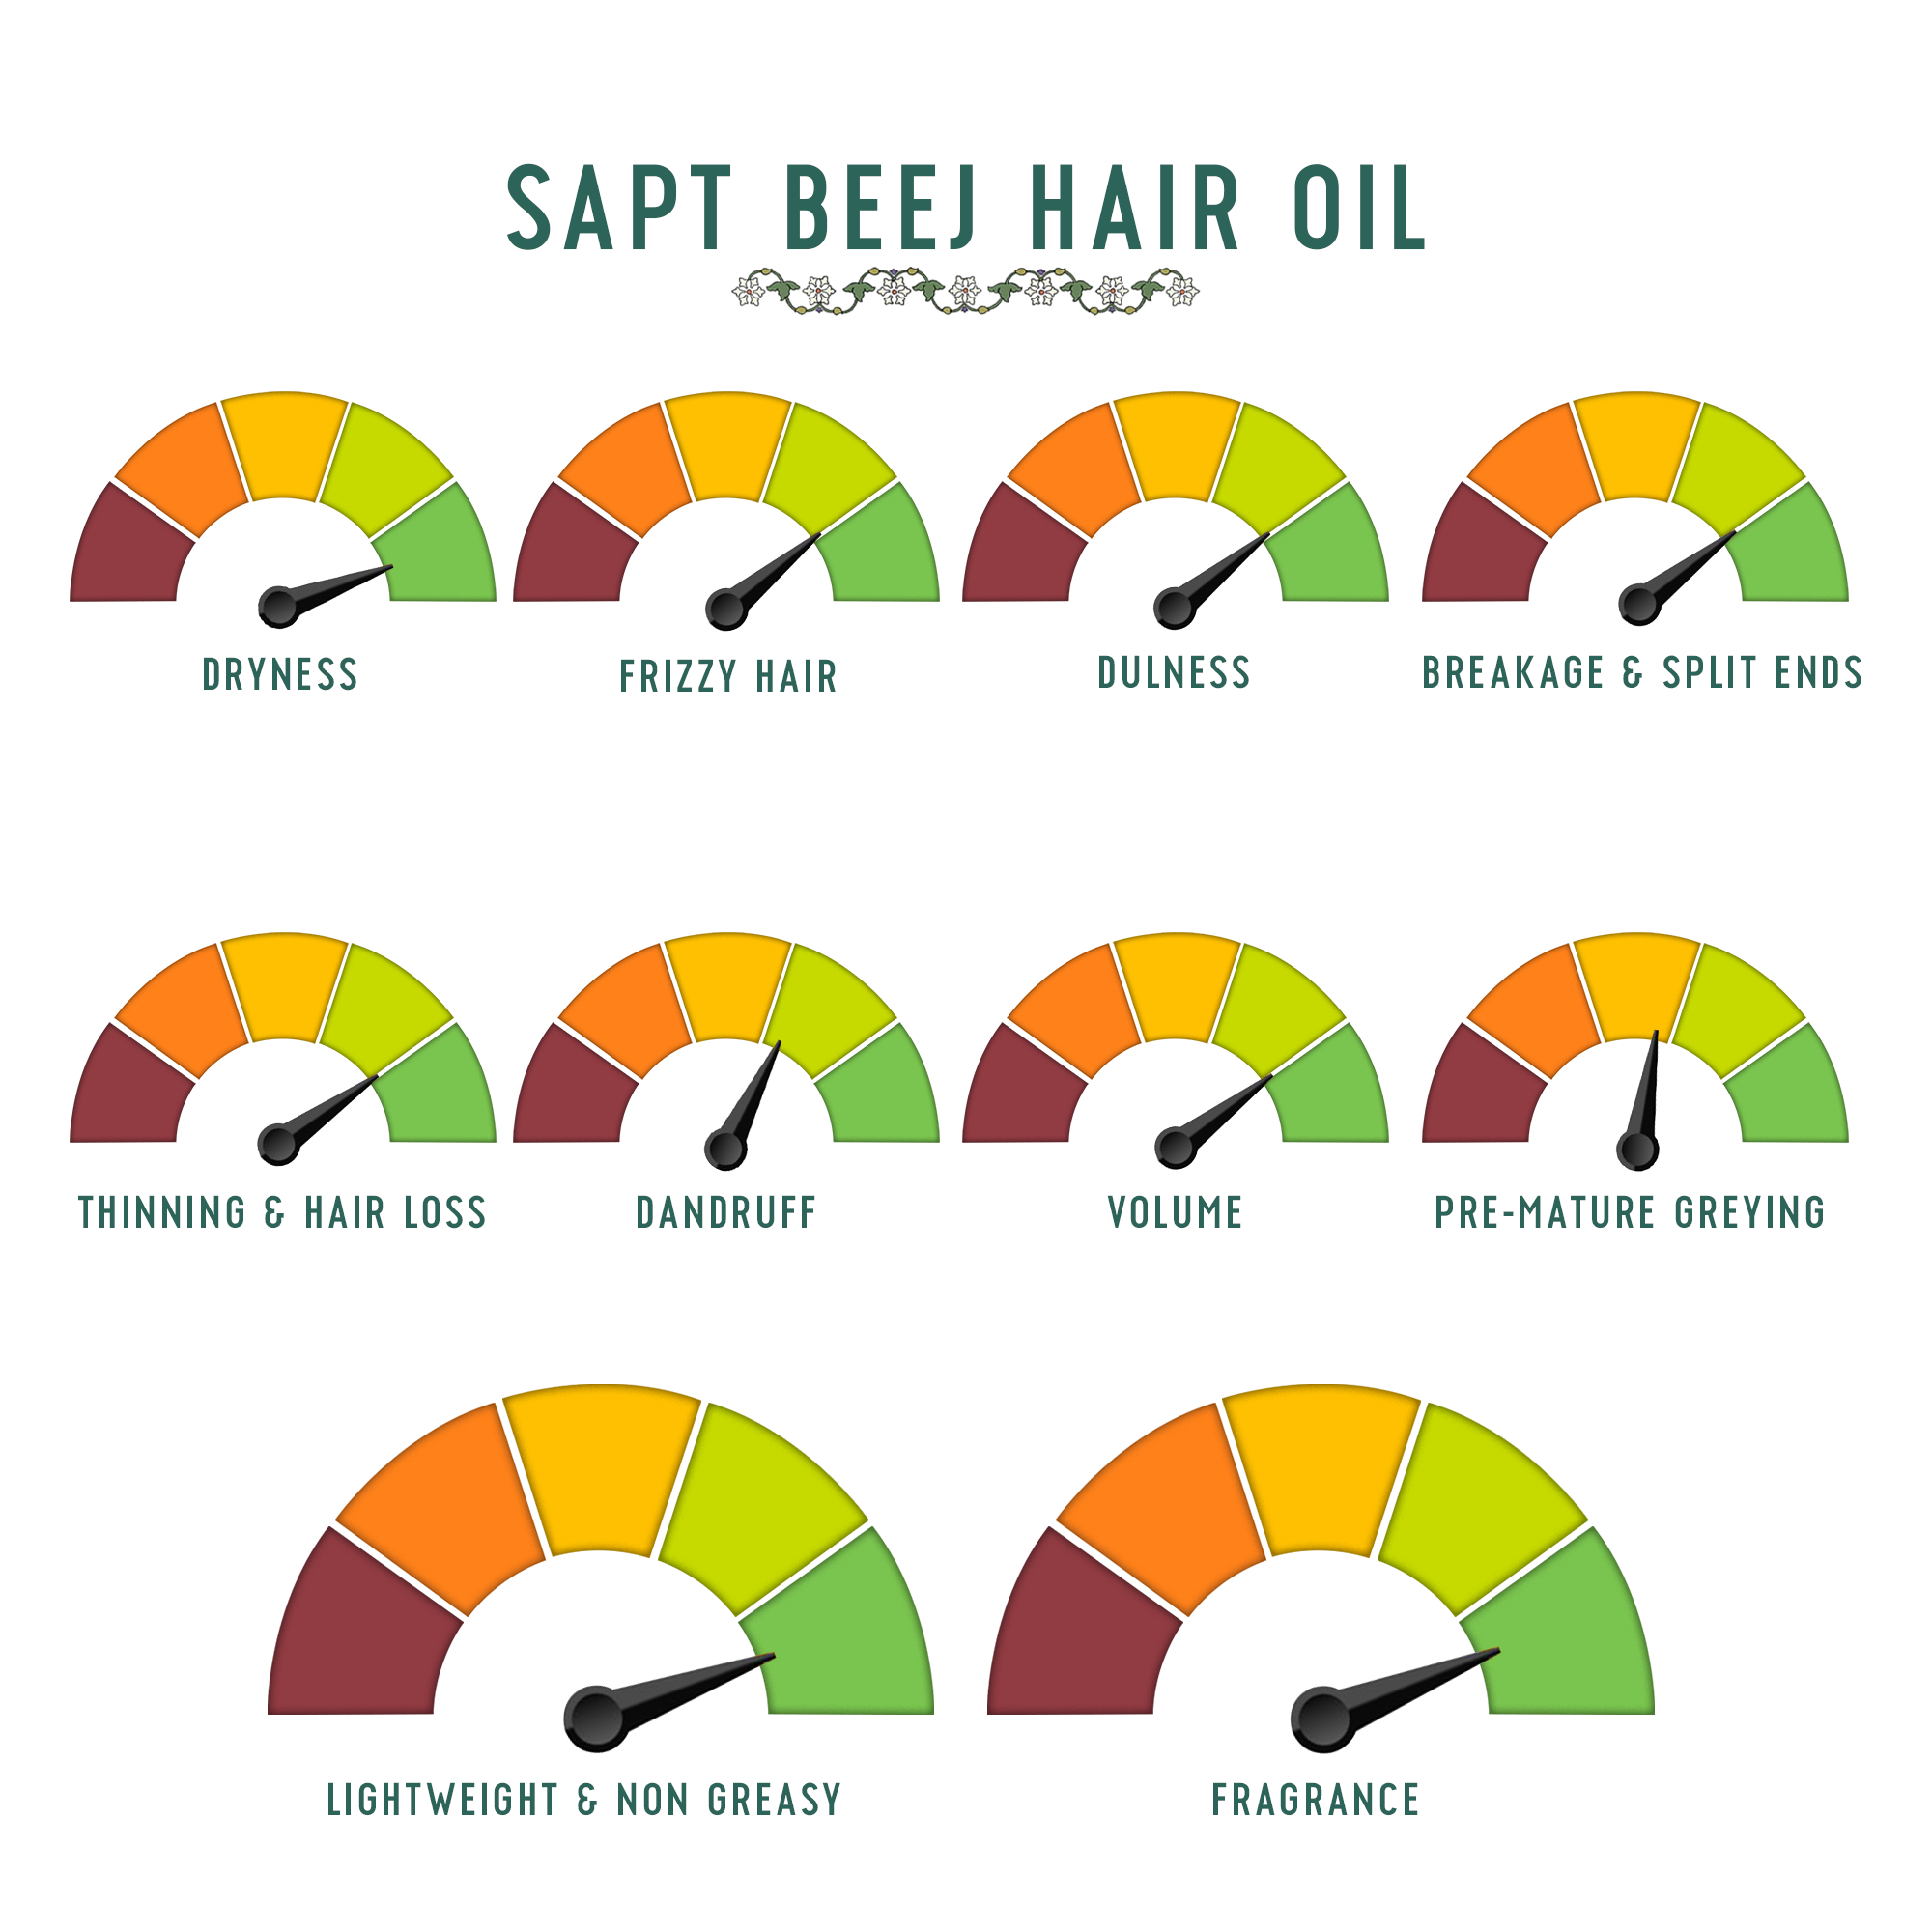 Saptbeej Hair Oil uses